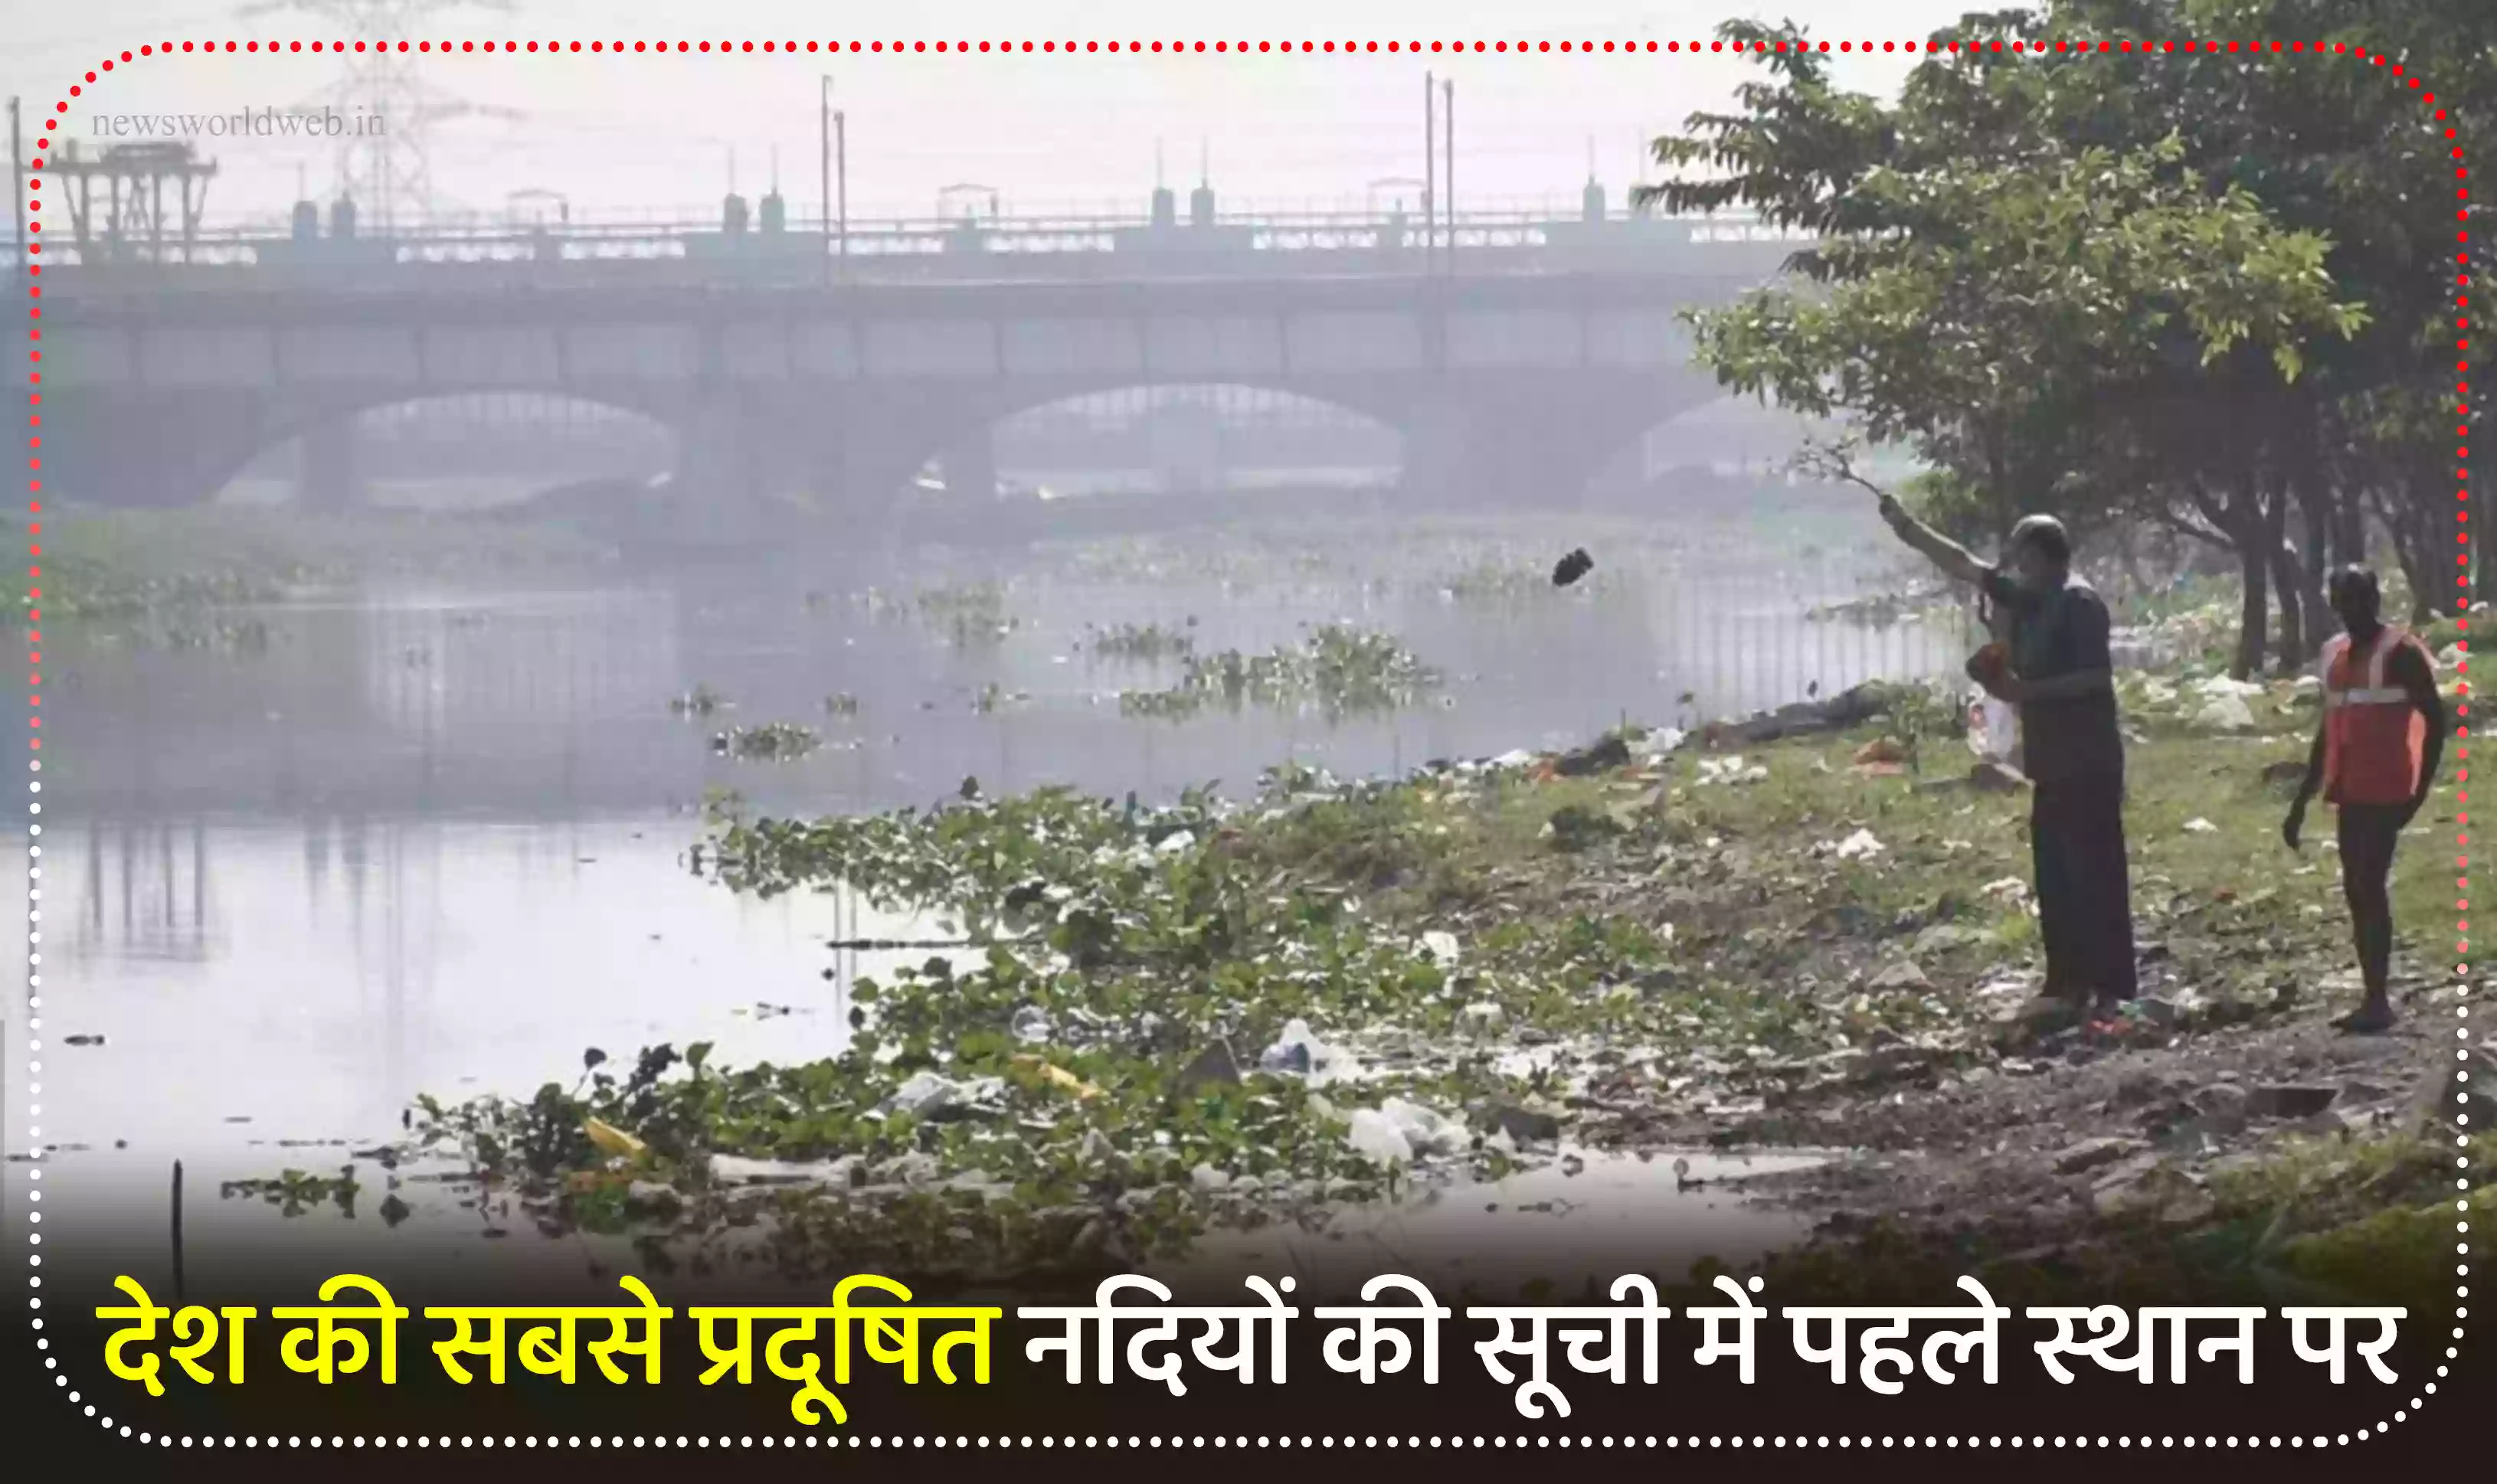 हिंडन नदी देश की सबसे प्रदूषित नदियों की सूची में पहले स्थान पर